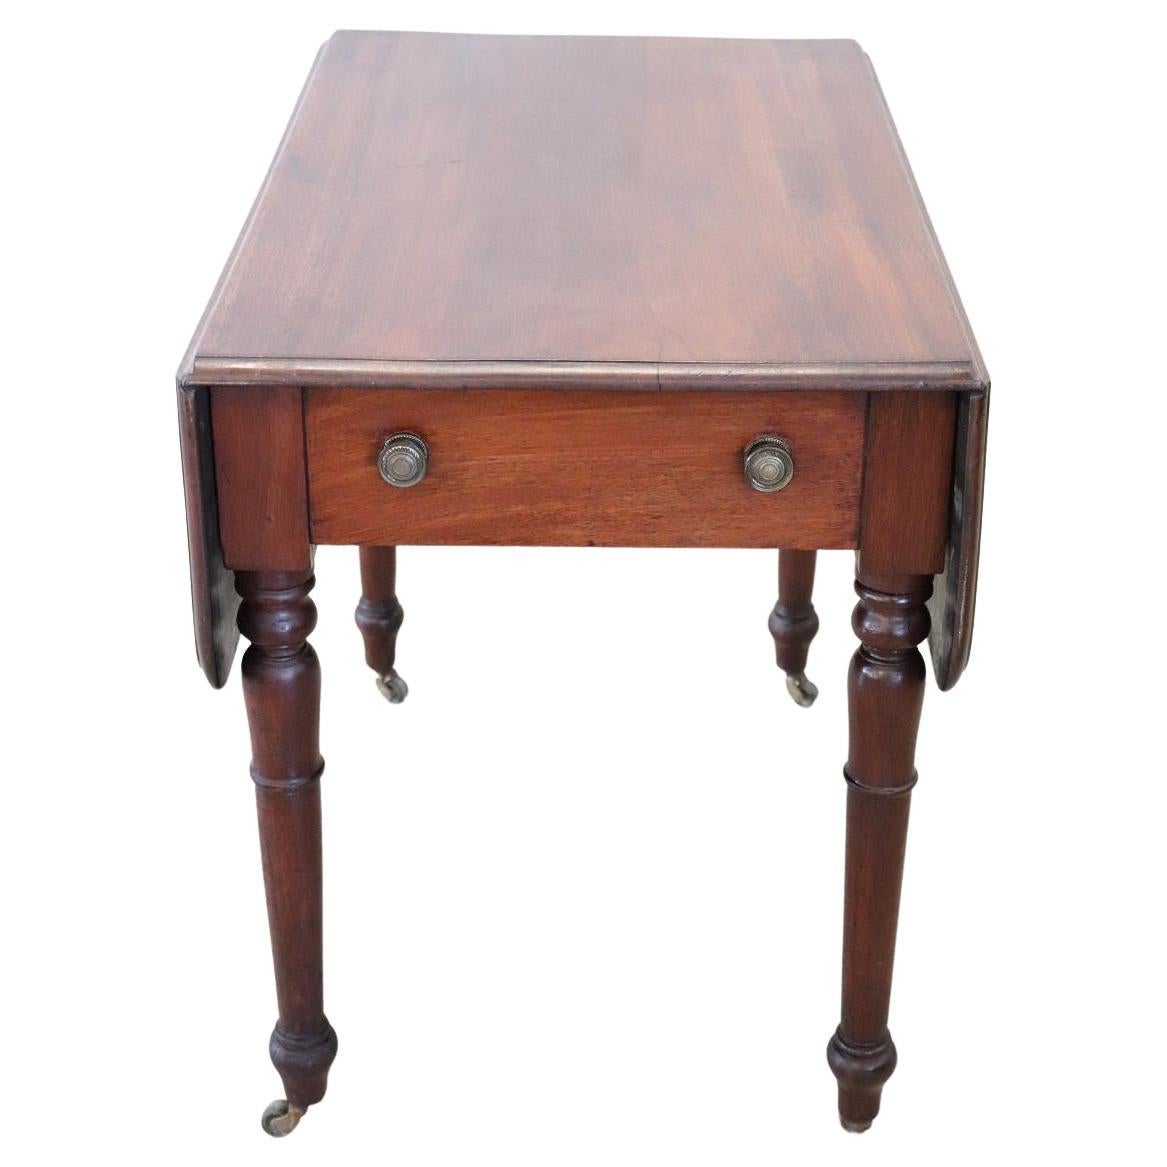 Table à bascule ancienne Louis Philippe du 19ème siècle